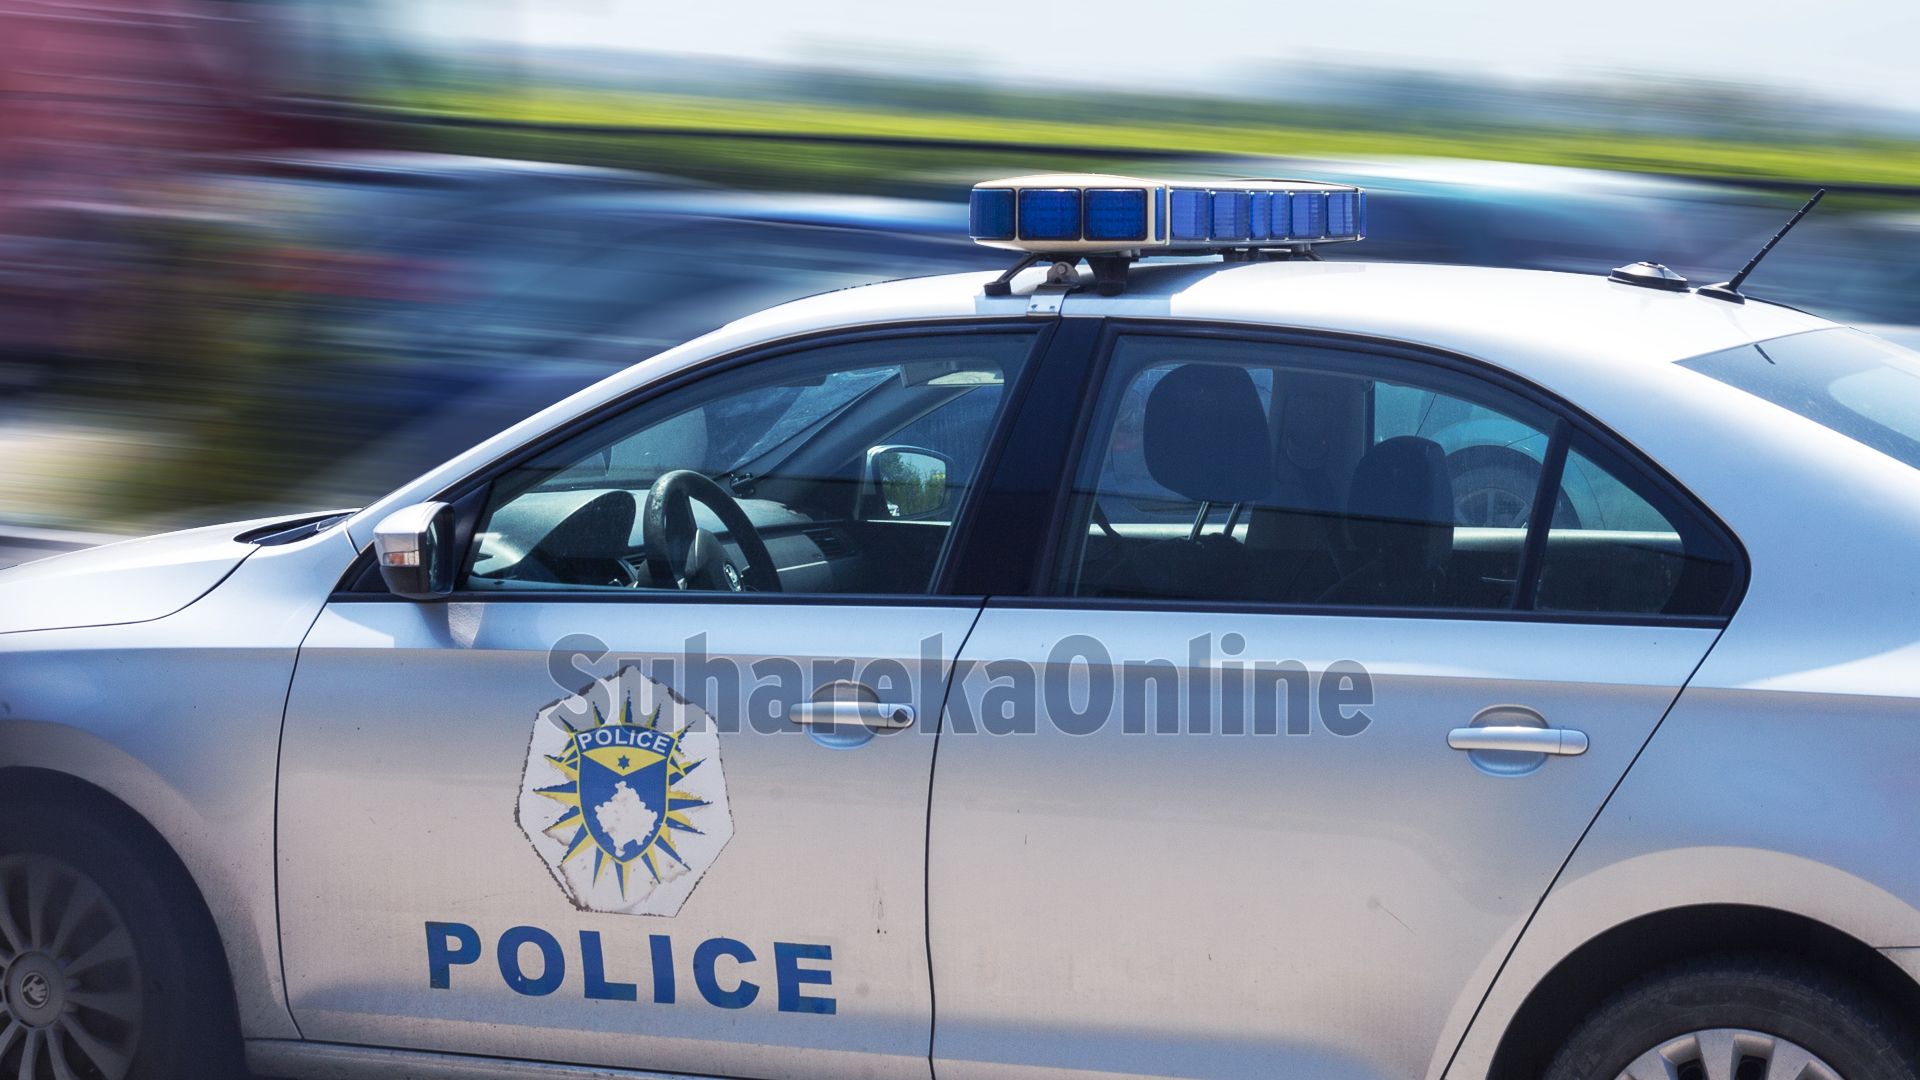 Për dy javë Policia e Suharekës ka shqiptuar mbi 400 tiketa trafiku